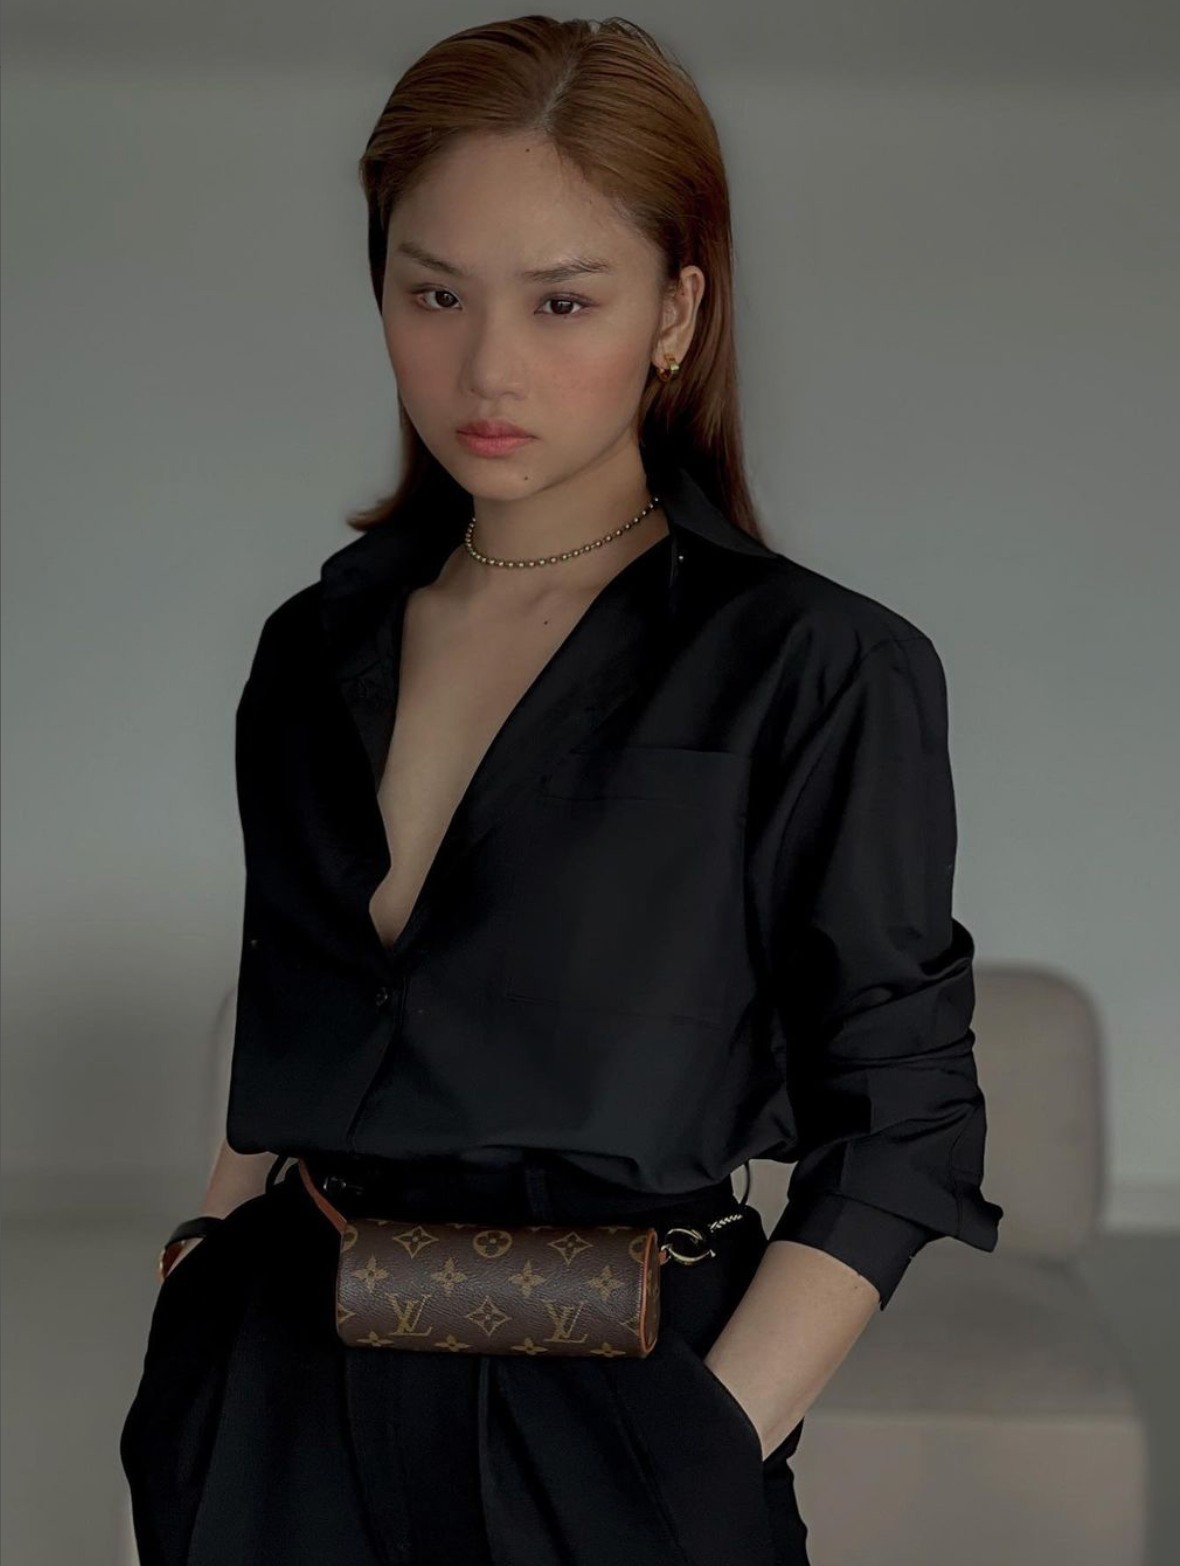 Kết hợp áo sơ mi và quần âu màu đen, Miu Lê tạo điểm nhấn bằng chiếc túi LV ở eo, giúp tỉ lệ cơ thể được cân đối hơn.